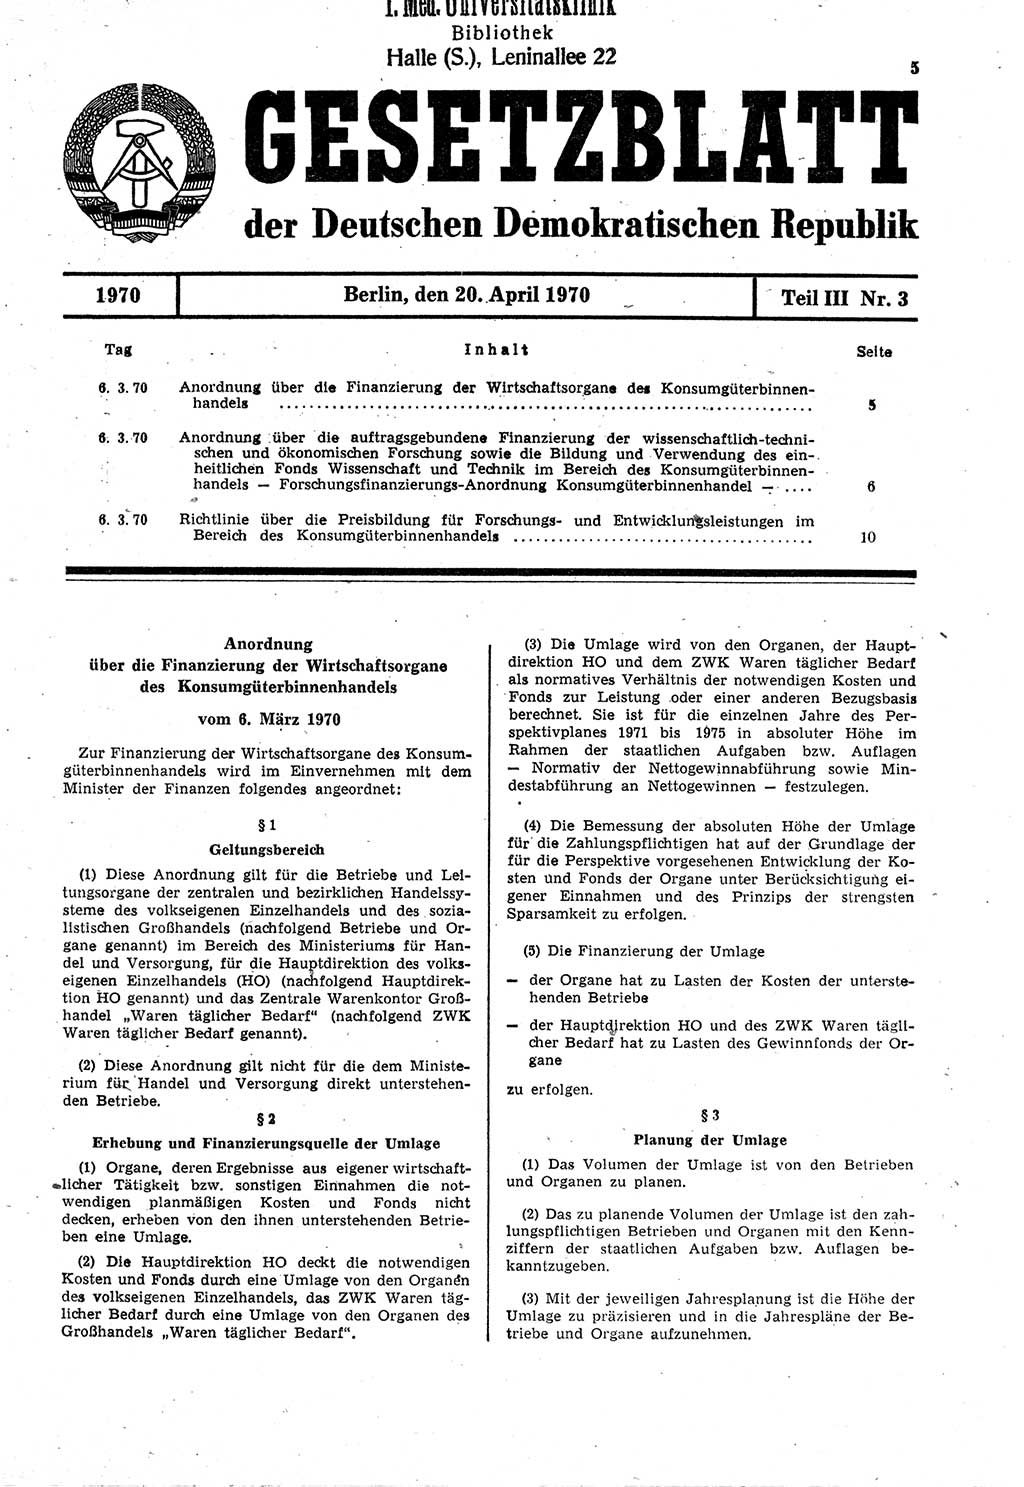 Gesetzblatt (GBl.) der Deutschen Demokratischen Republik (DDR) Teil ⅠⅠⅠ 1970, Seite 5 (GBl. DDR ⅠⅠⅠ 1970, S. 5)